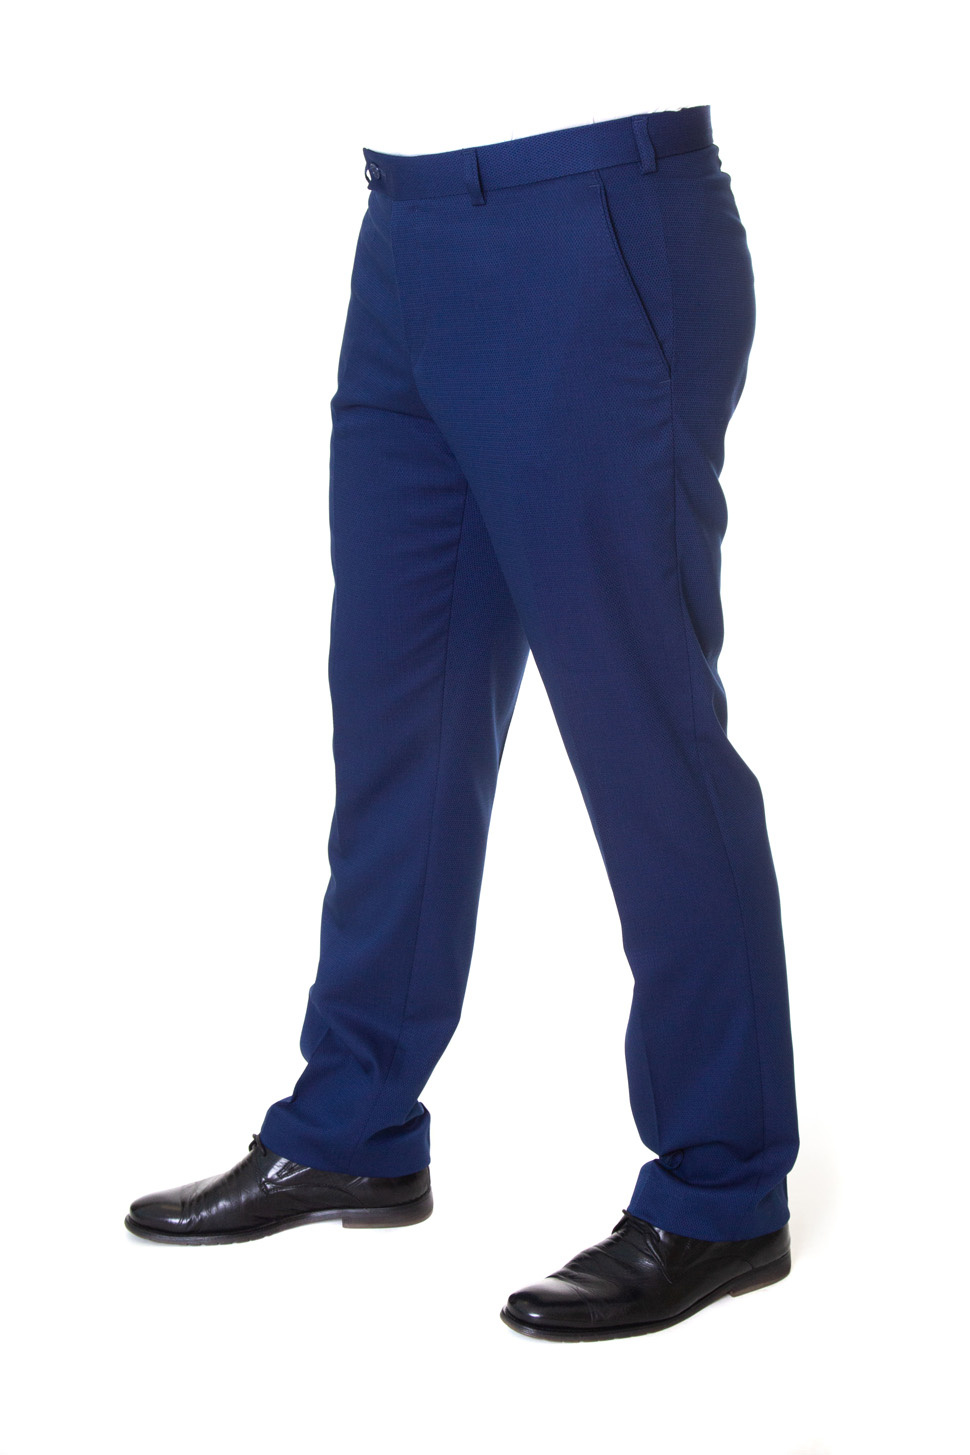 Купить брюки мужские синие 69468 по цене 2 400 руб.  - интернет .